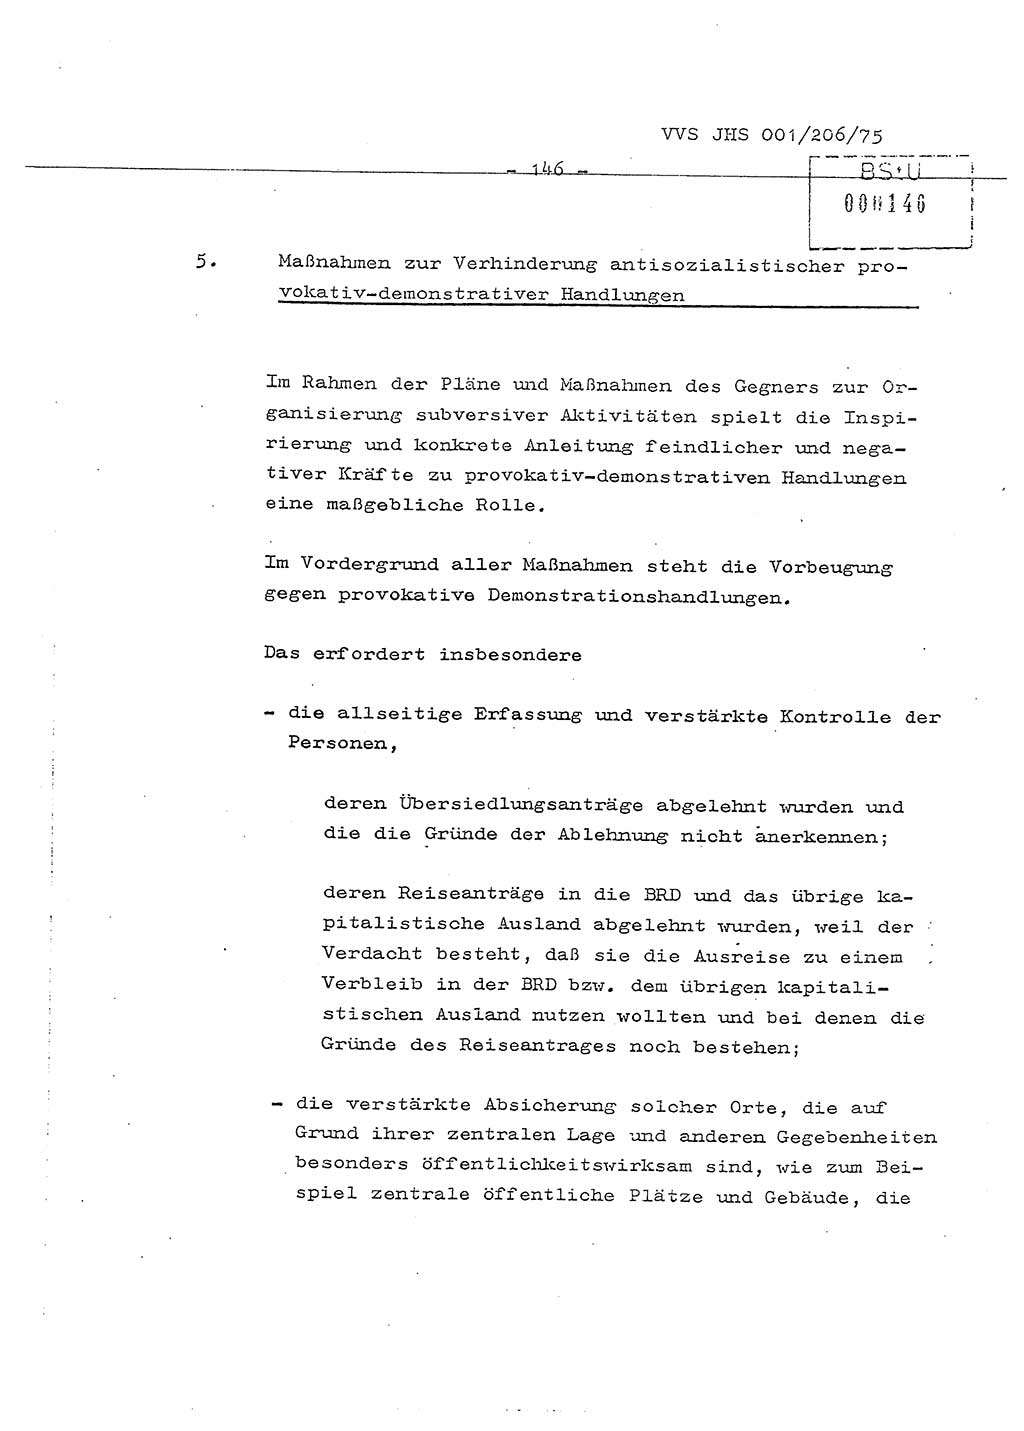 Dissertation Generalmajor Manfred Hummitzsch (Leiter der BV Leipzig), Generalmajor Heinz Fiedler (HA Ⅵ), Oberst Rolf Fister (HA Ⅸ), Ministerium für Staatssicherheit (MfS) [Deutsche Demokratische Republik (DDR)], Juristische Hochschule (JHS), Vertrauliche Verschlußsache (VVS) 001-206/75, Potsdam 1975, Seite 146 (Diss. MfS DDR JHS VVS 001-206/75 1975, S. 146)